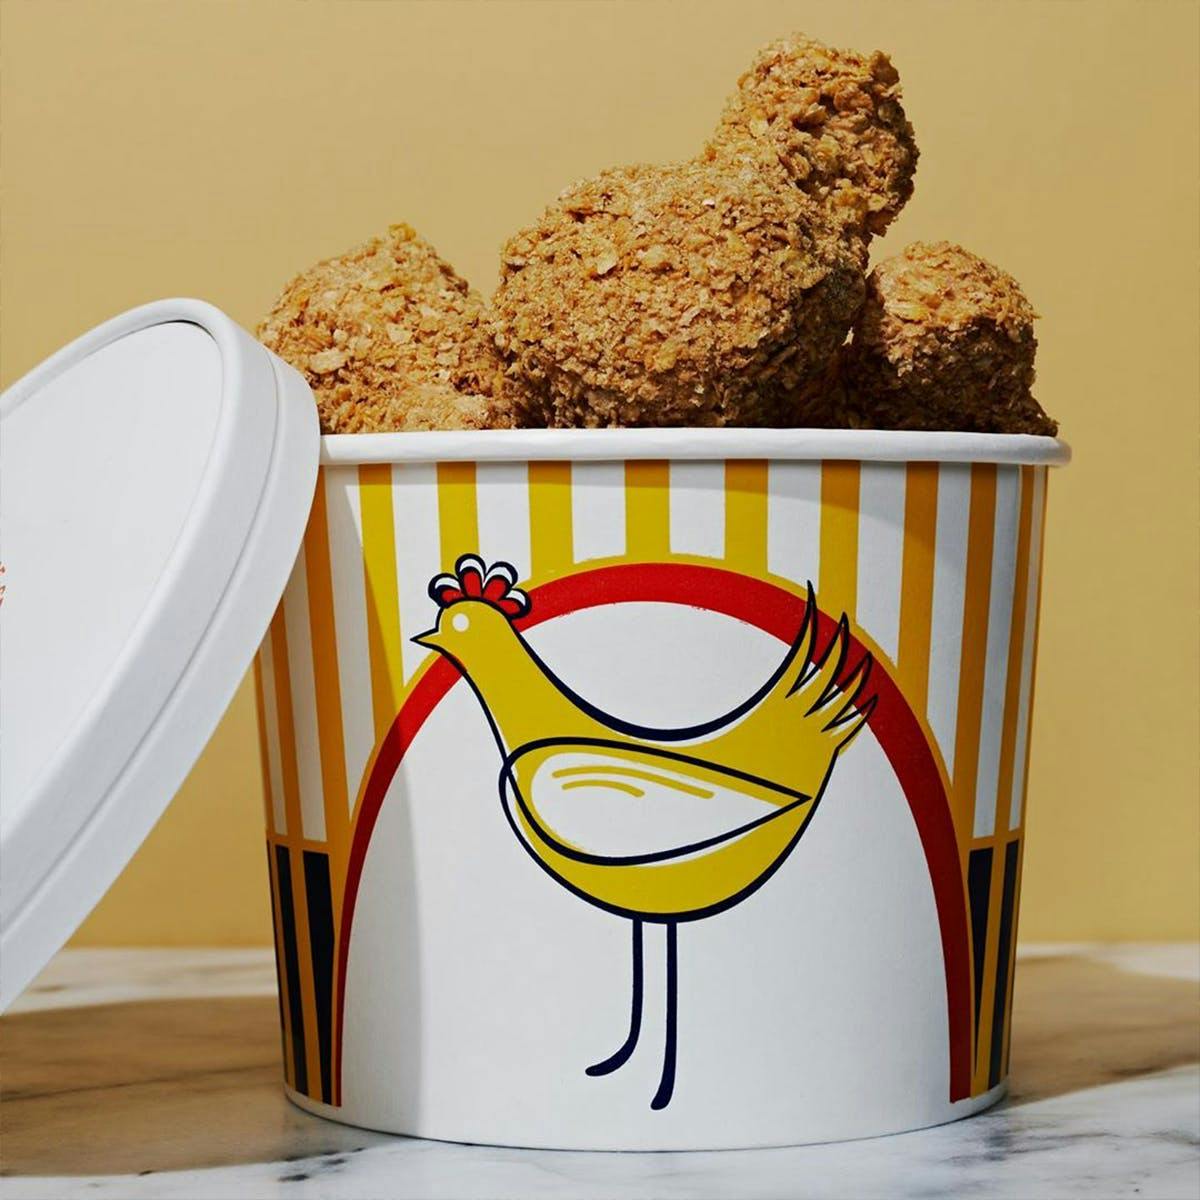 Not Fried Chicken Ice Cream: TikTok's Viral Sensation